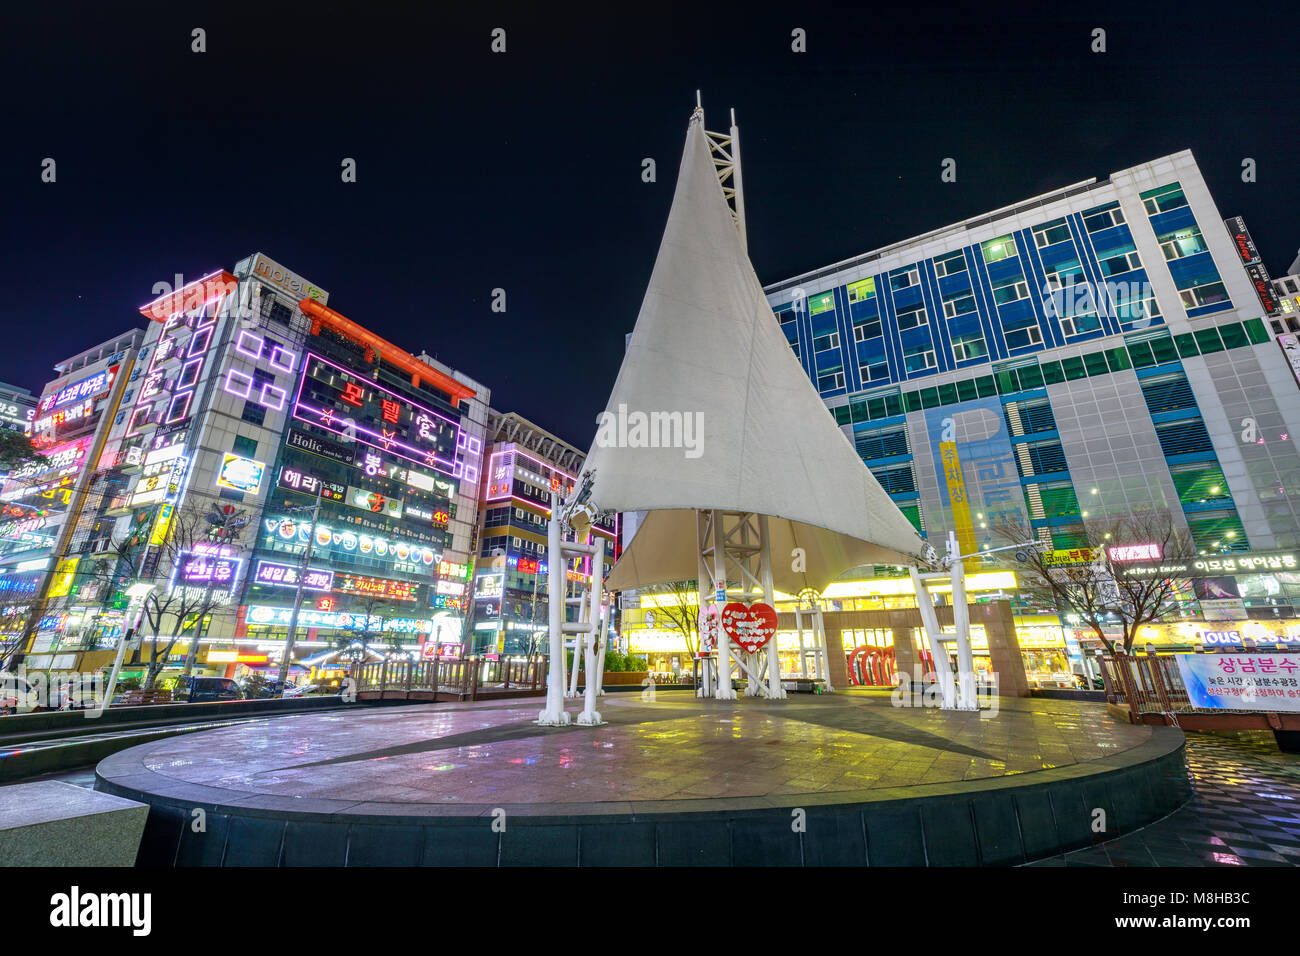 Changwon, South Korea - March 13, 2018 : Night view of Sangnam Fountain Plaza in Changwon, Gyeongsangnam-do, South Korea Stock Photo